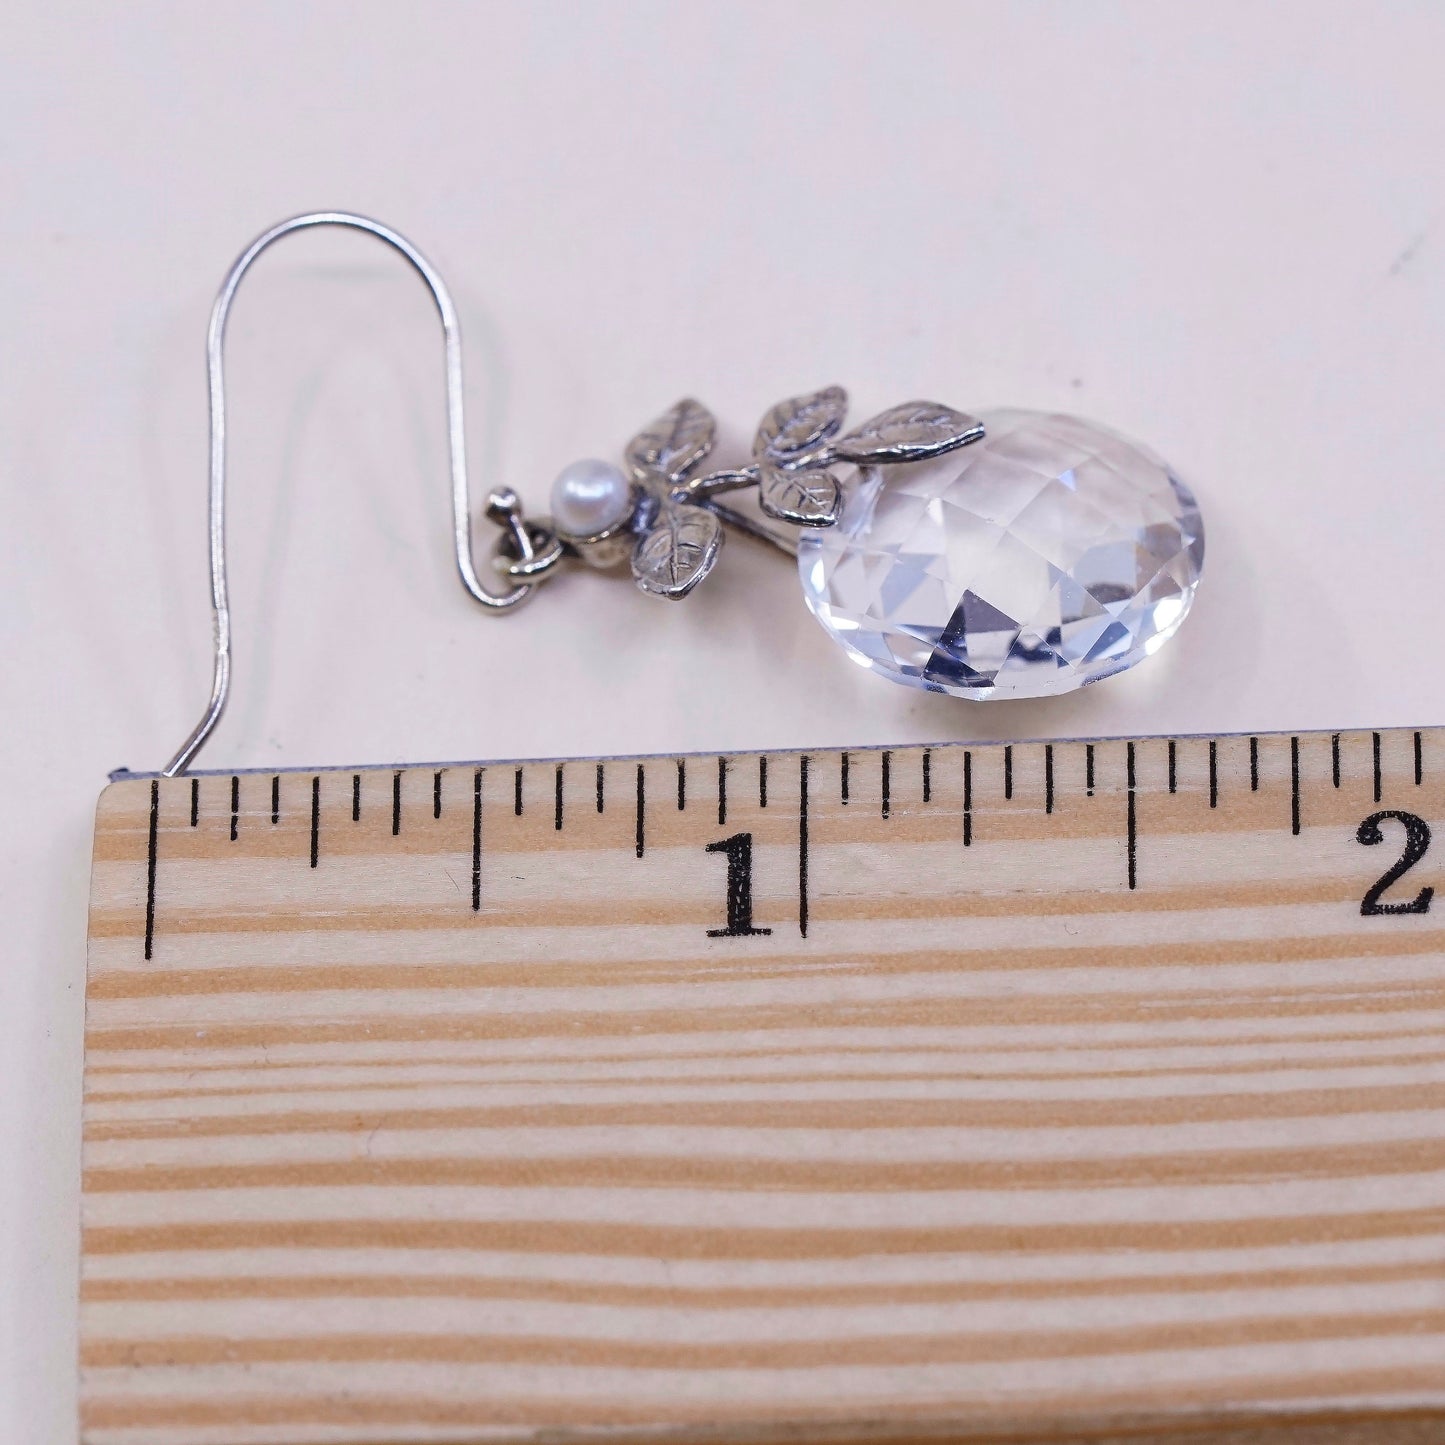 vtg Israel Sterling silver handmade earrings, 925 leaves w/ pearl n cz dangles